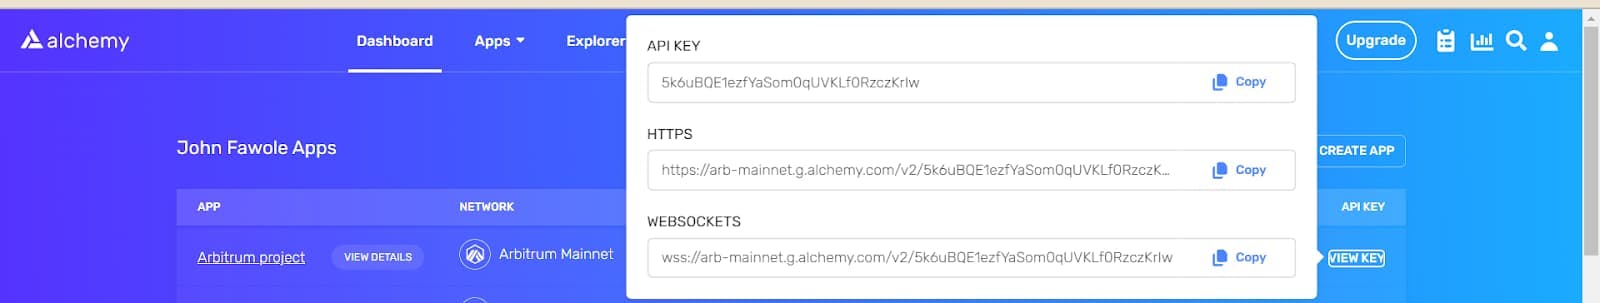 Alchemy API keys for Arbitrum project